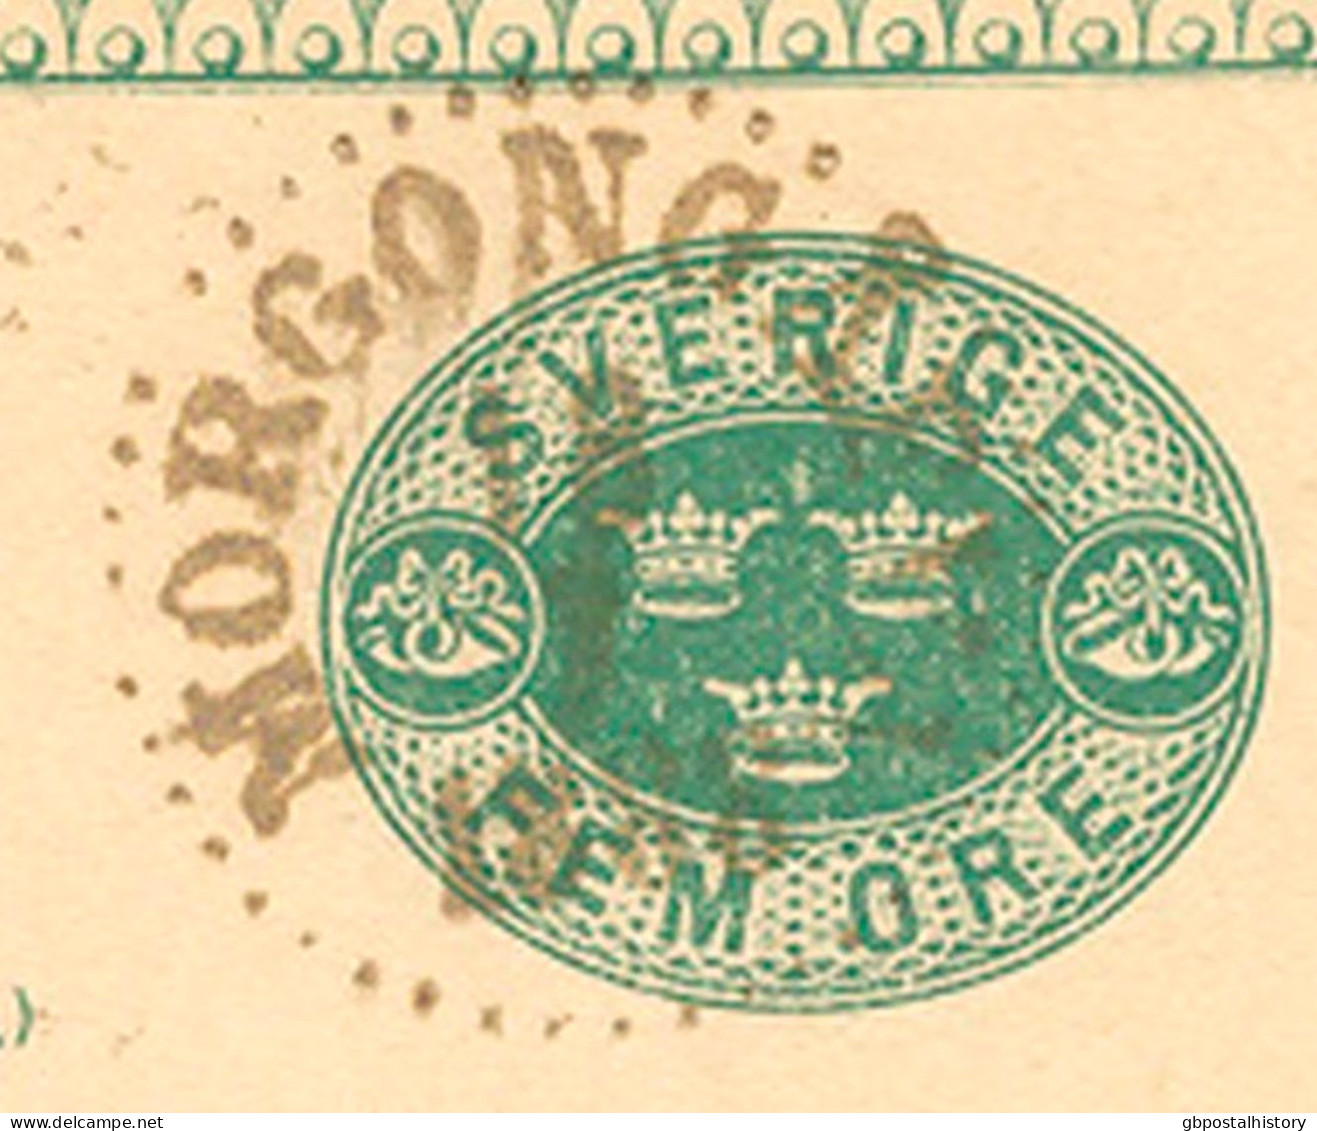 SCHWEDEN 1888 "MORGONGÂFVA" (MORGONGÄVA) Selt. K1 Klar A. 5 (FEM) Öre Grün GA-Postkarte, Kab.   SWEDEN VILLAGE POSTMARKS - 1885-1911 Oscar II